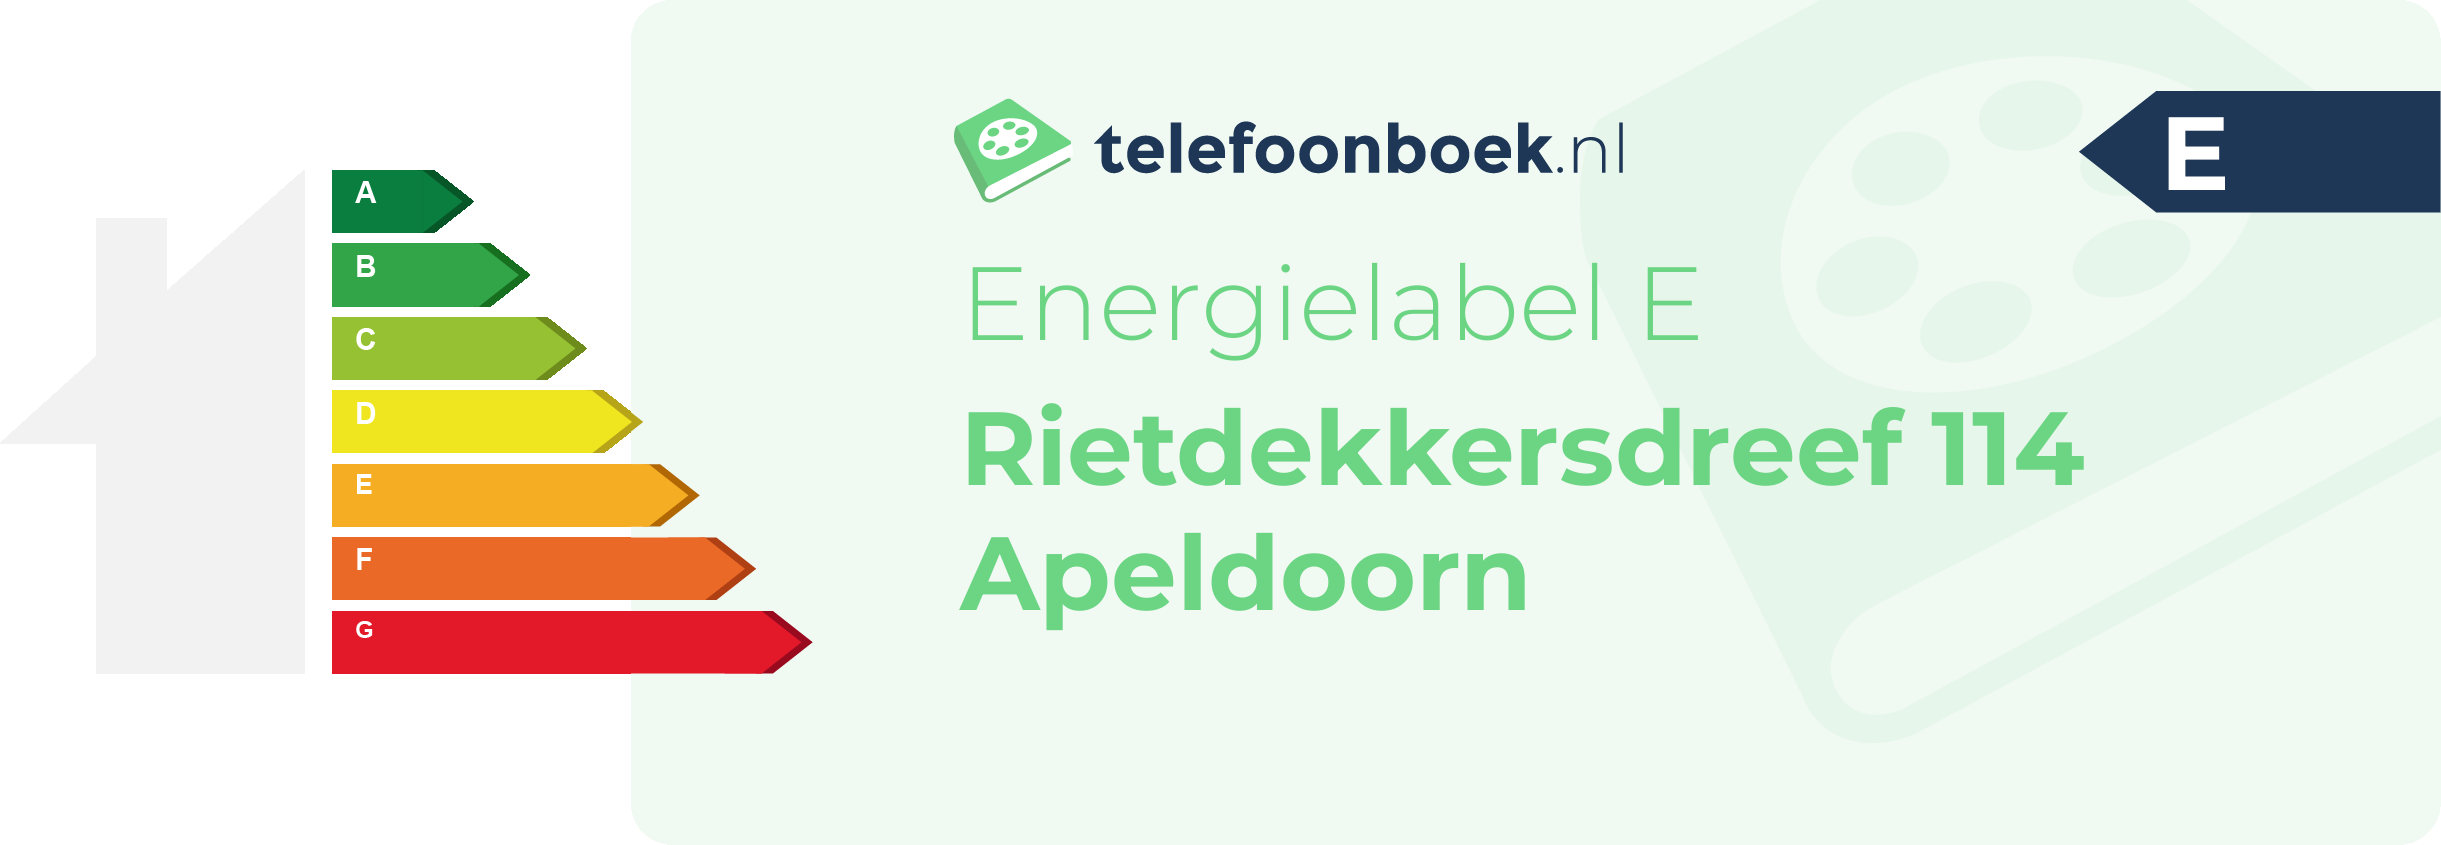 Energielabel Rietdekkersdreef 114 Apeldoorn